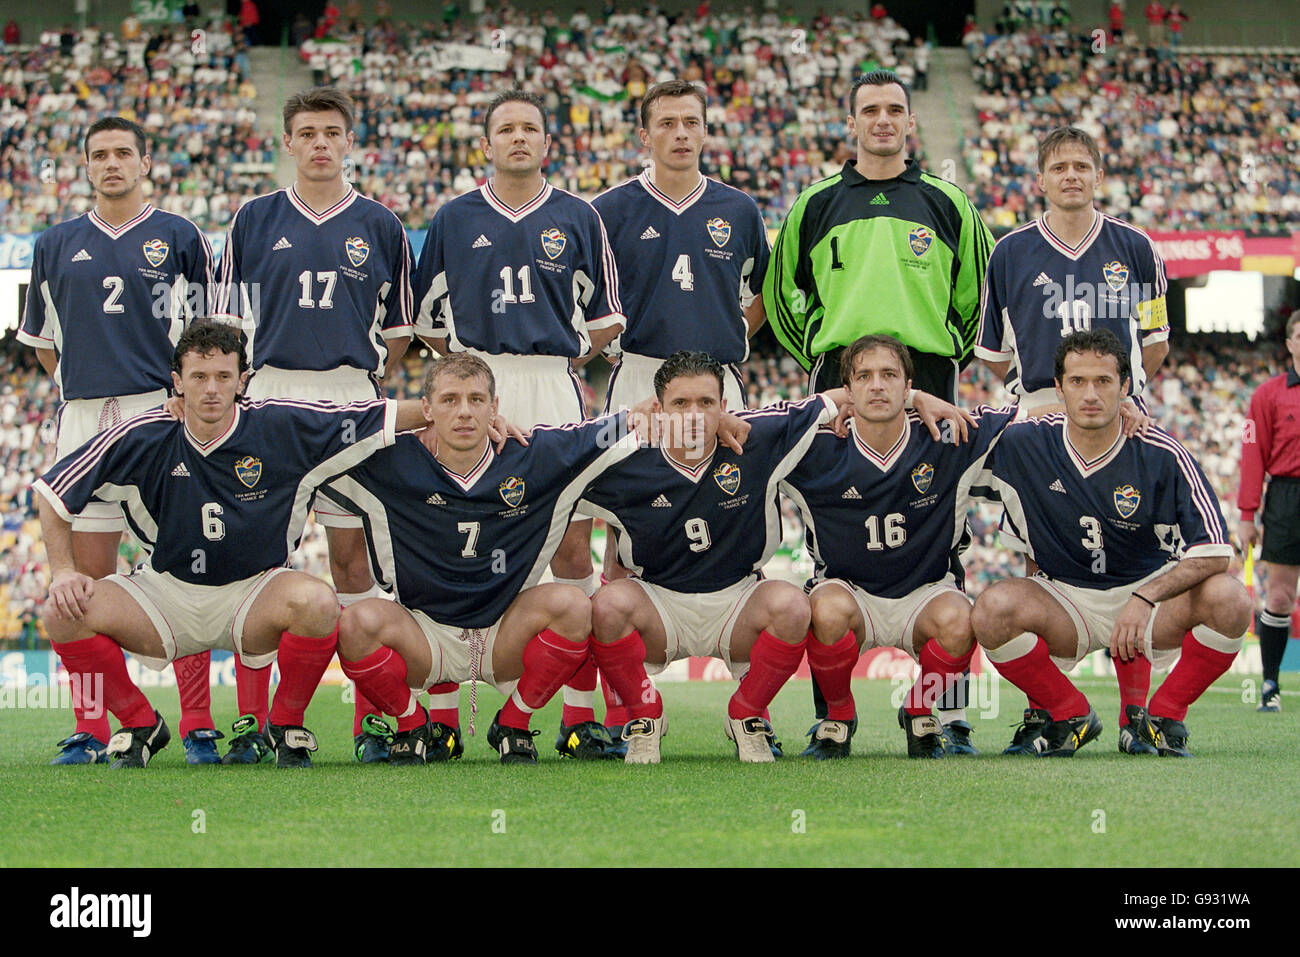 Fußball - Weltmeisterschaft Frankreich 98 - Gruppe F - Jugoslawien / Iran.  Jugoslawische Mannschaftsgruppe Stockfotografie - Alamy